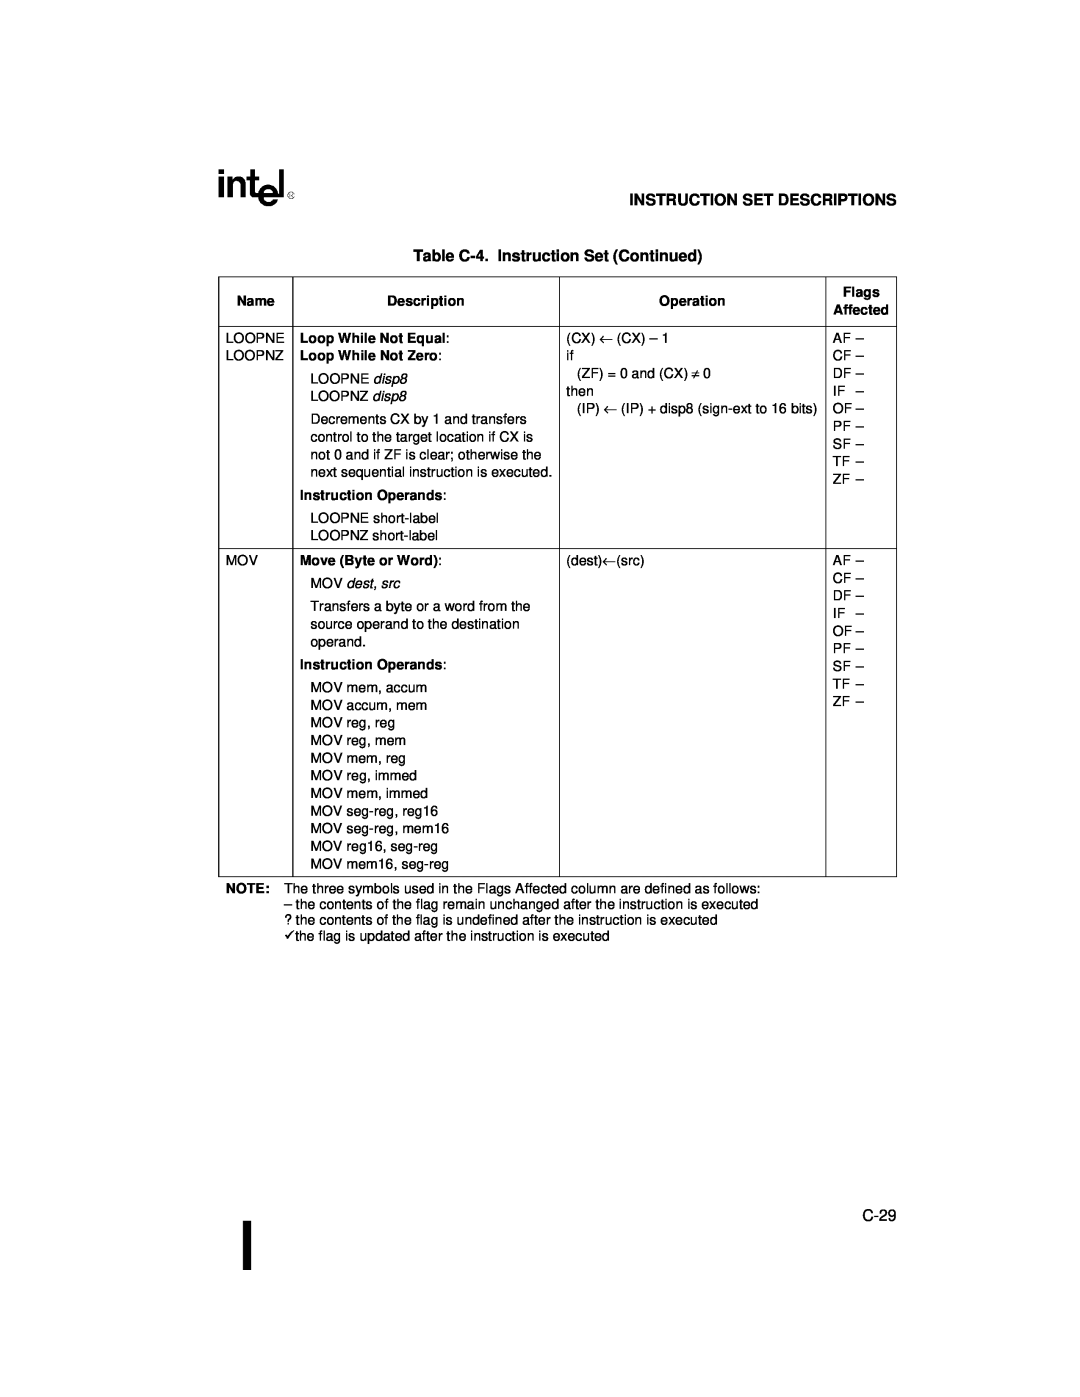 Intel 80C188XL, 80C186XL user manual Instruction Set Descriptions, Table C-4.Instruction Set Continued, C-29, MOV dest, src 